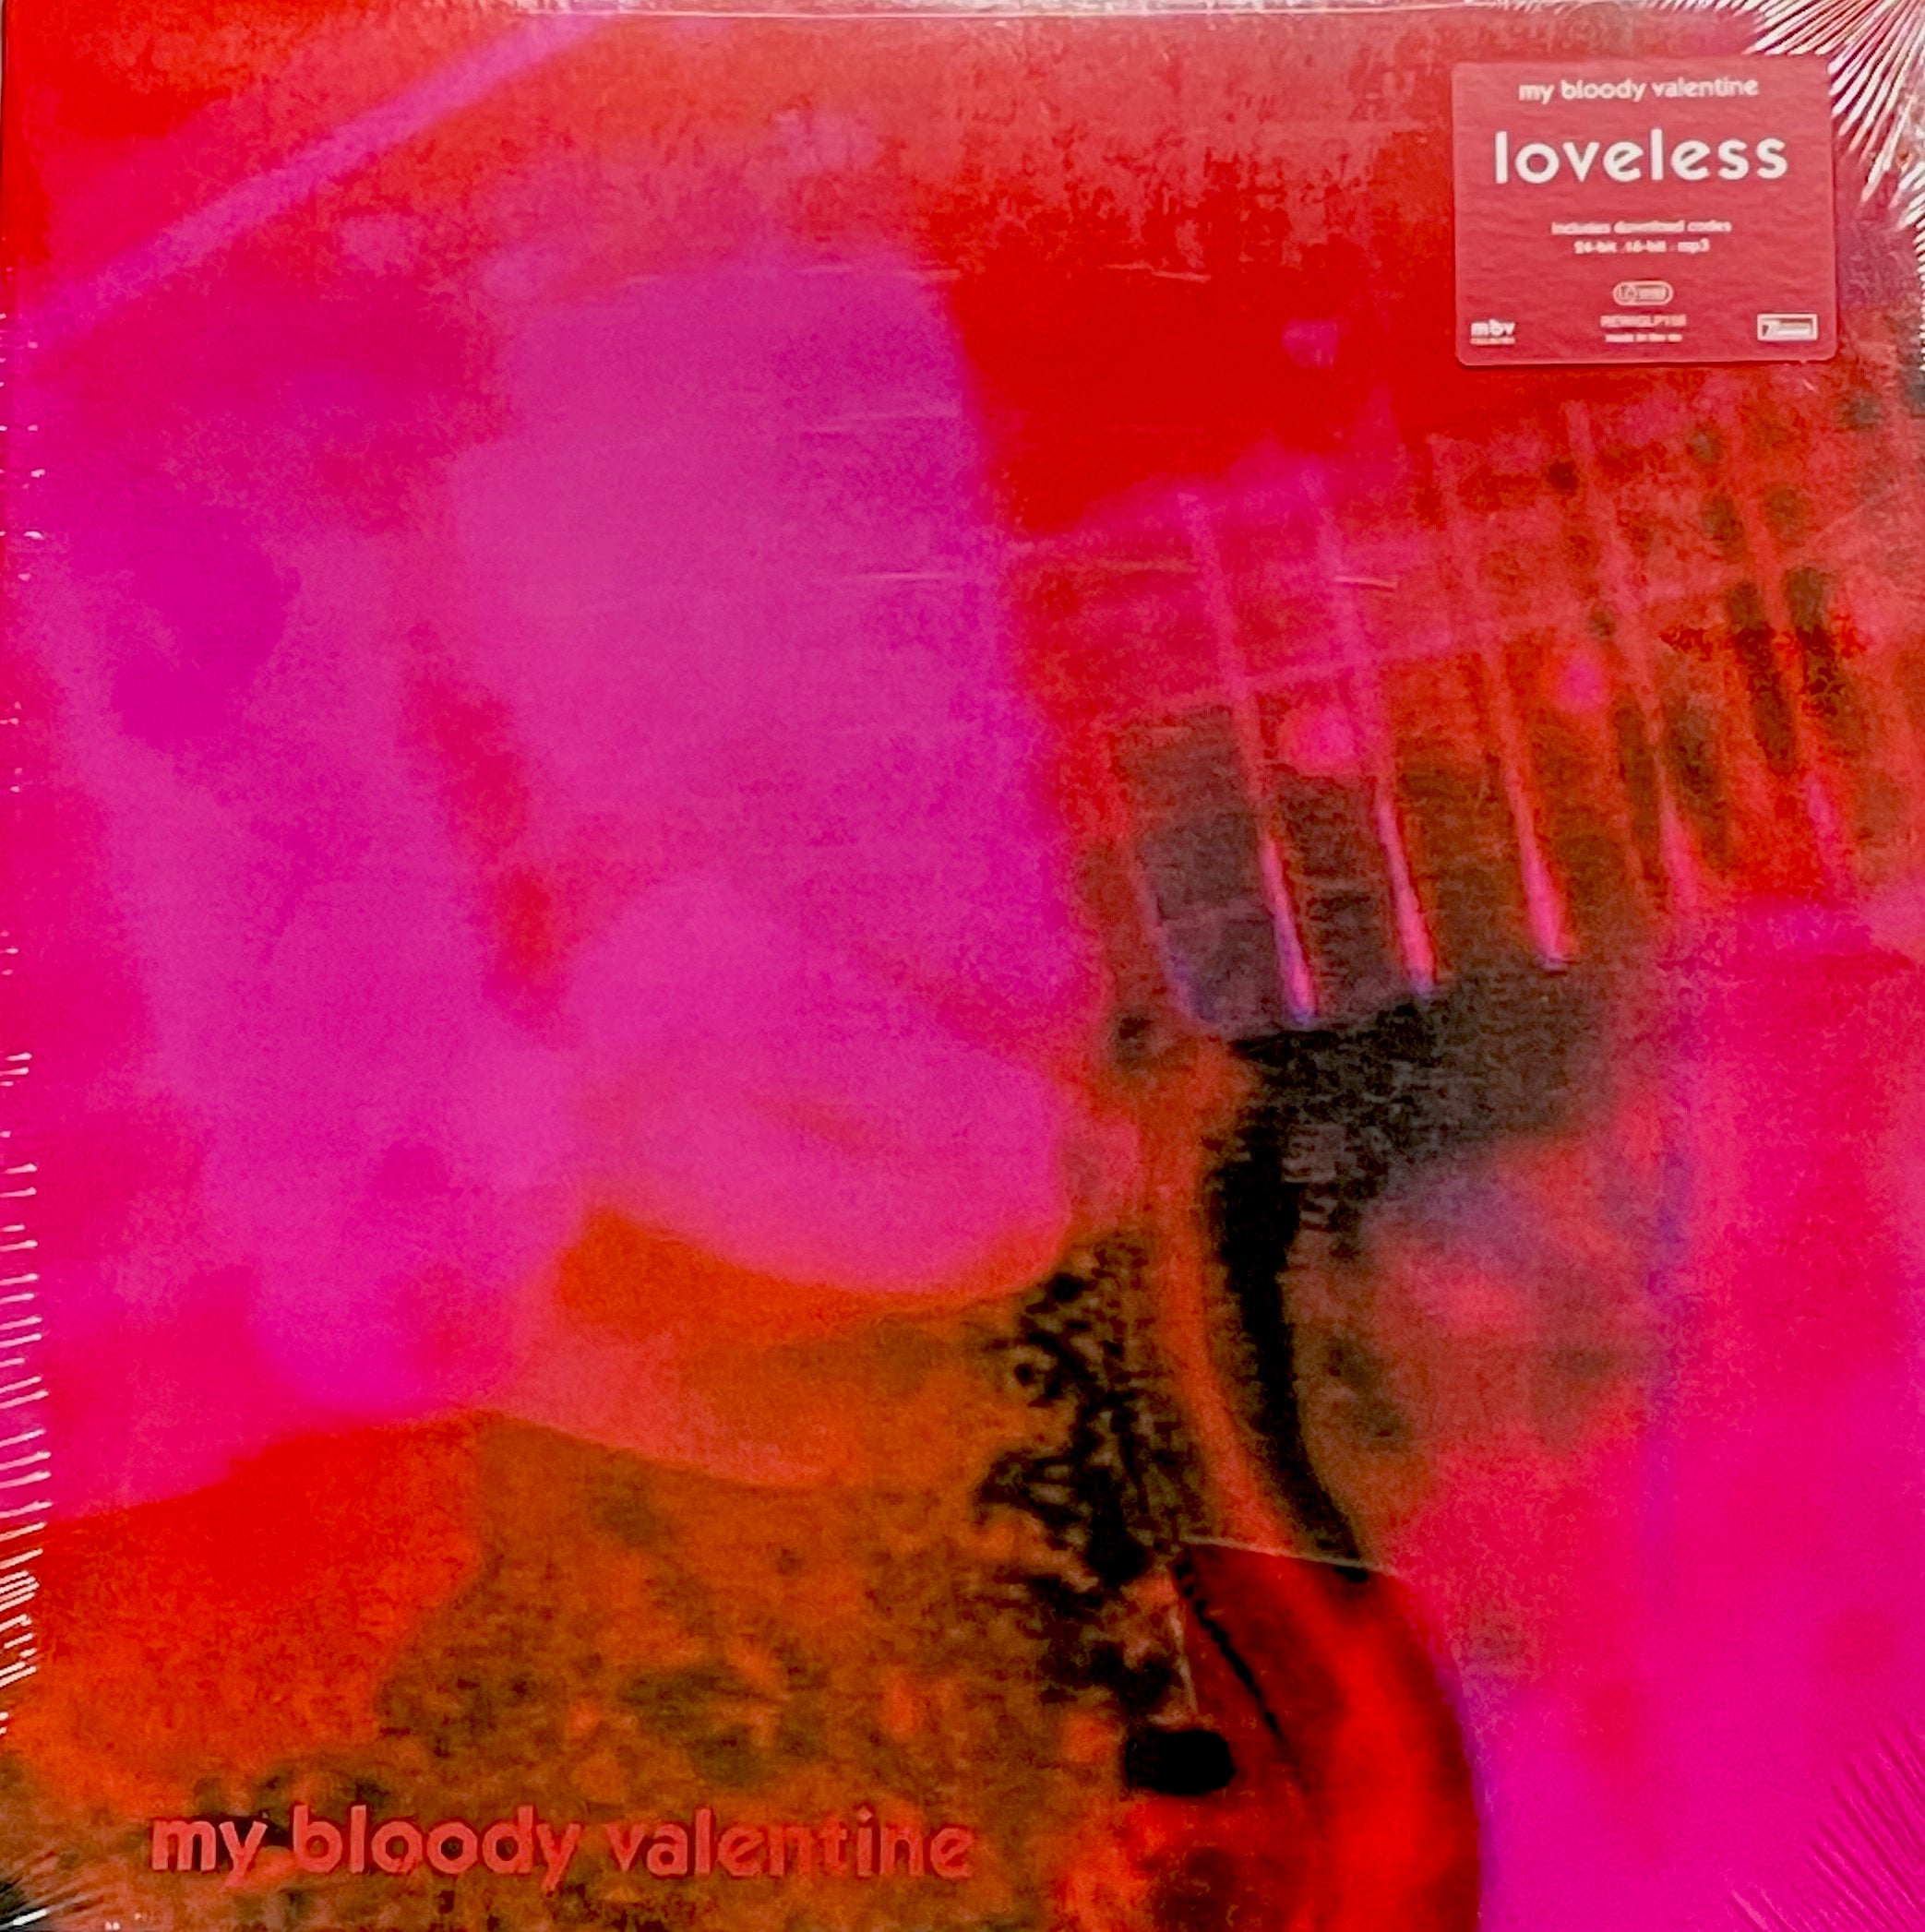 専門店では valentine bloody my loveless lp レコード 洋楽 